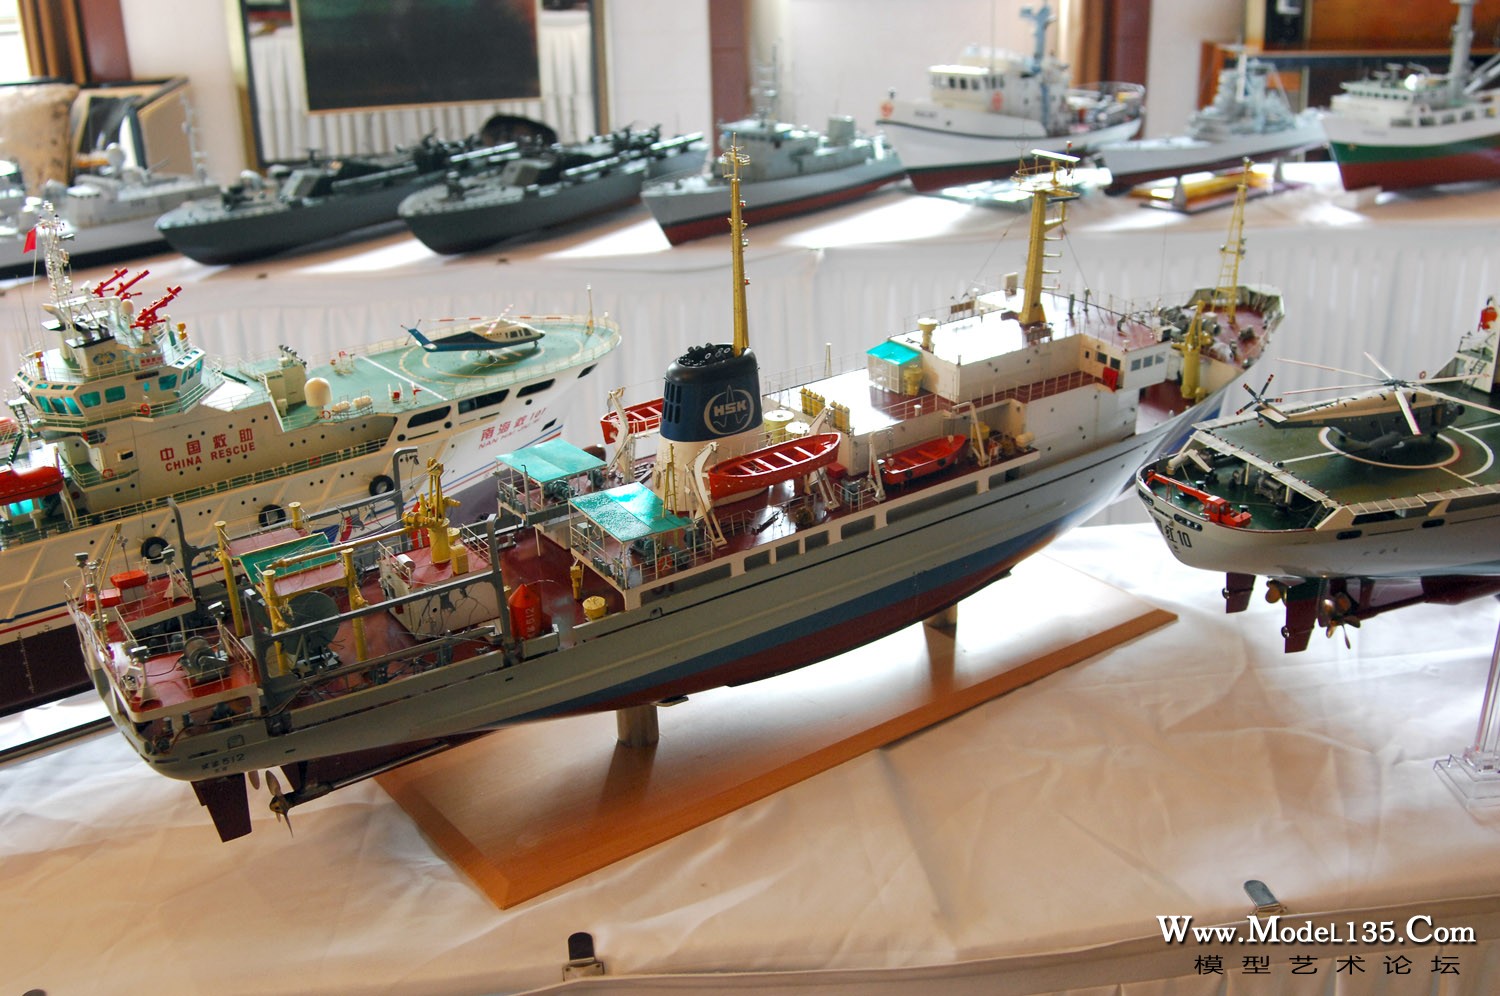 仿真竞赛现场－C2:F2机械船模－广东队滨海512模型.jpg